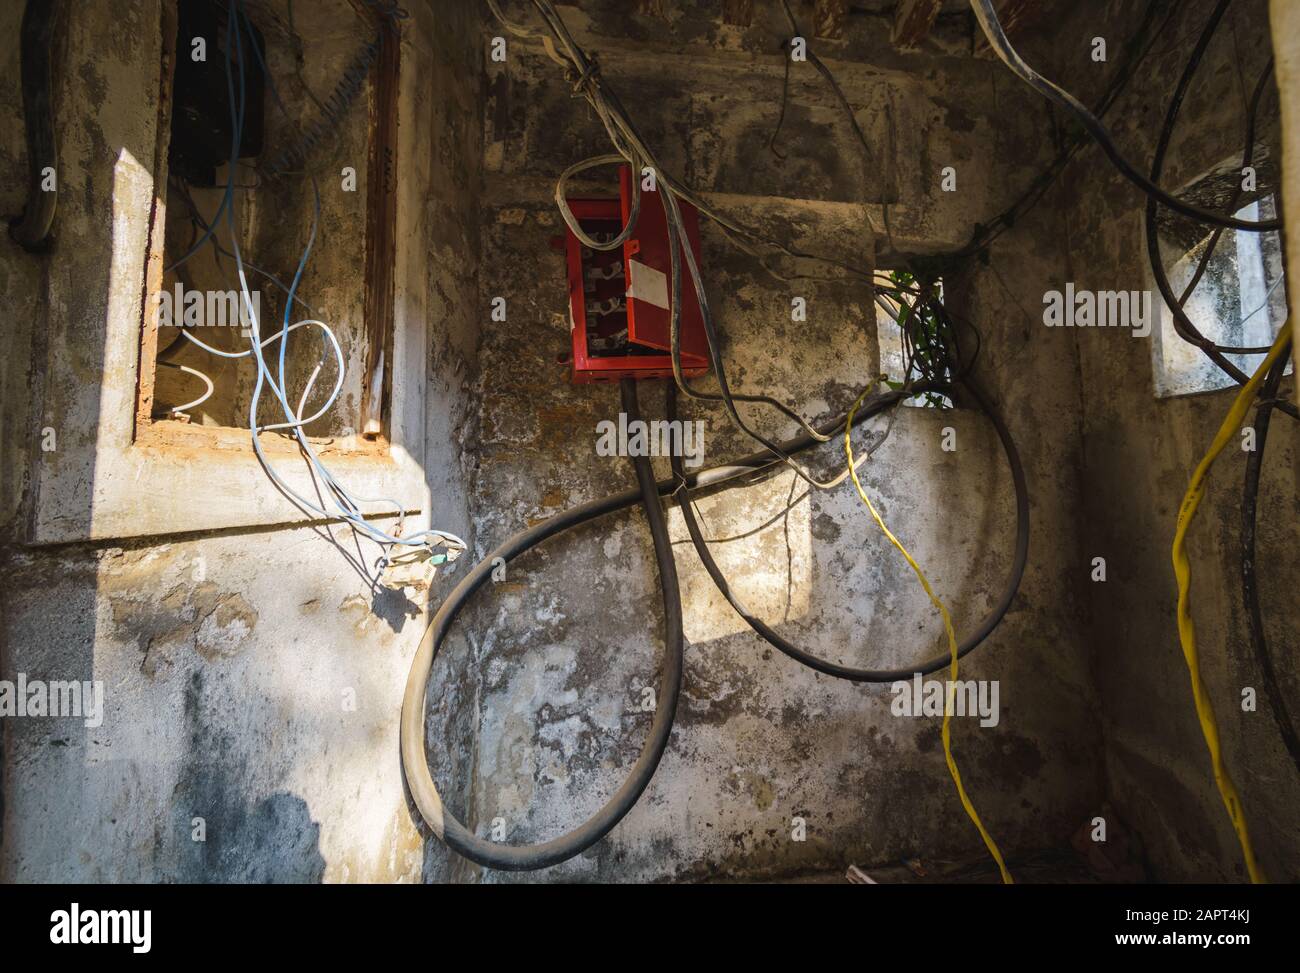 DIU, Indien - Dezember 2018: Elektrische Drähte und Kabel in einer kleinen, alten Kabine mit elektrischen Einheiten zur Übertragung von Elektrizität innerhalb des Diu Forts. Stockfoto